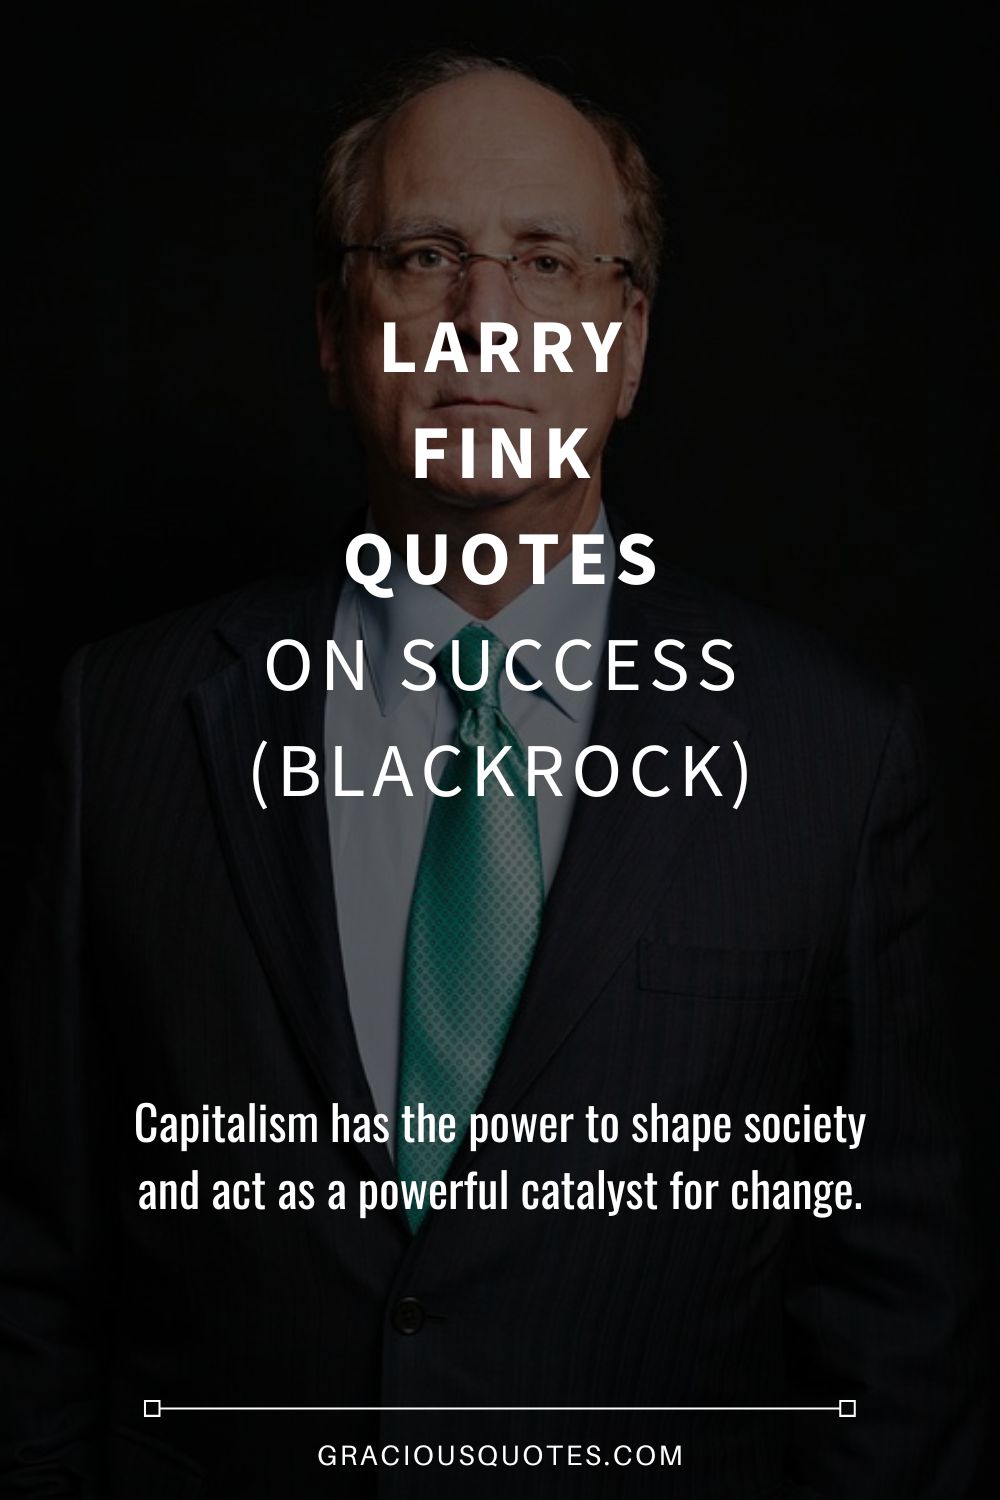 Larry Fink Quotes on Success (BLACKROCK) - Gracious Quotes